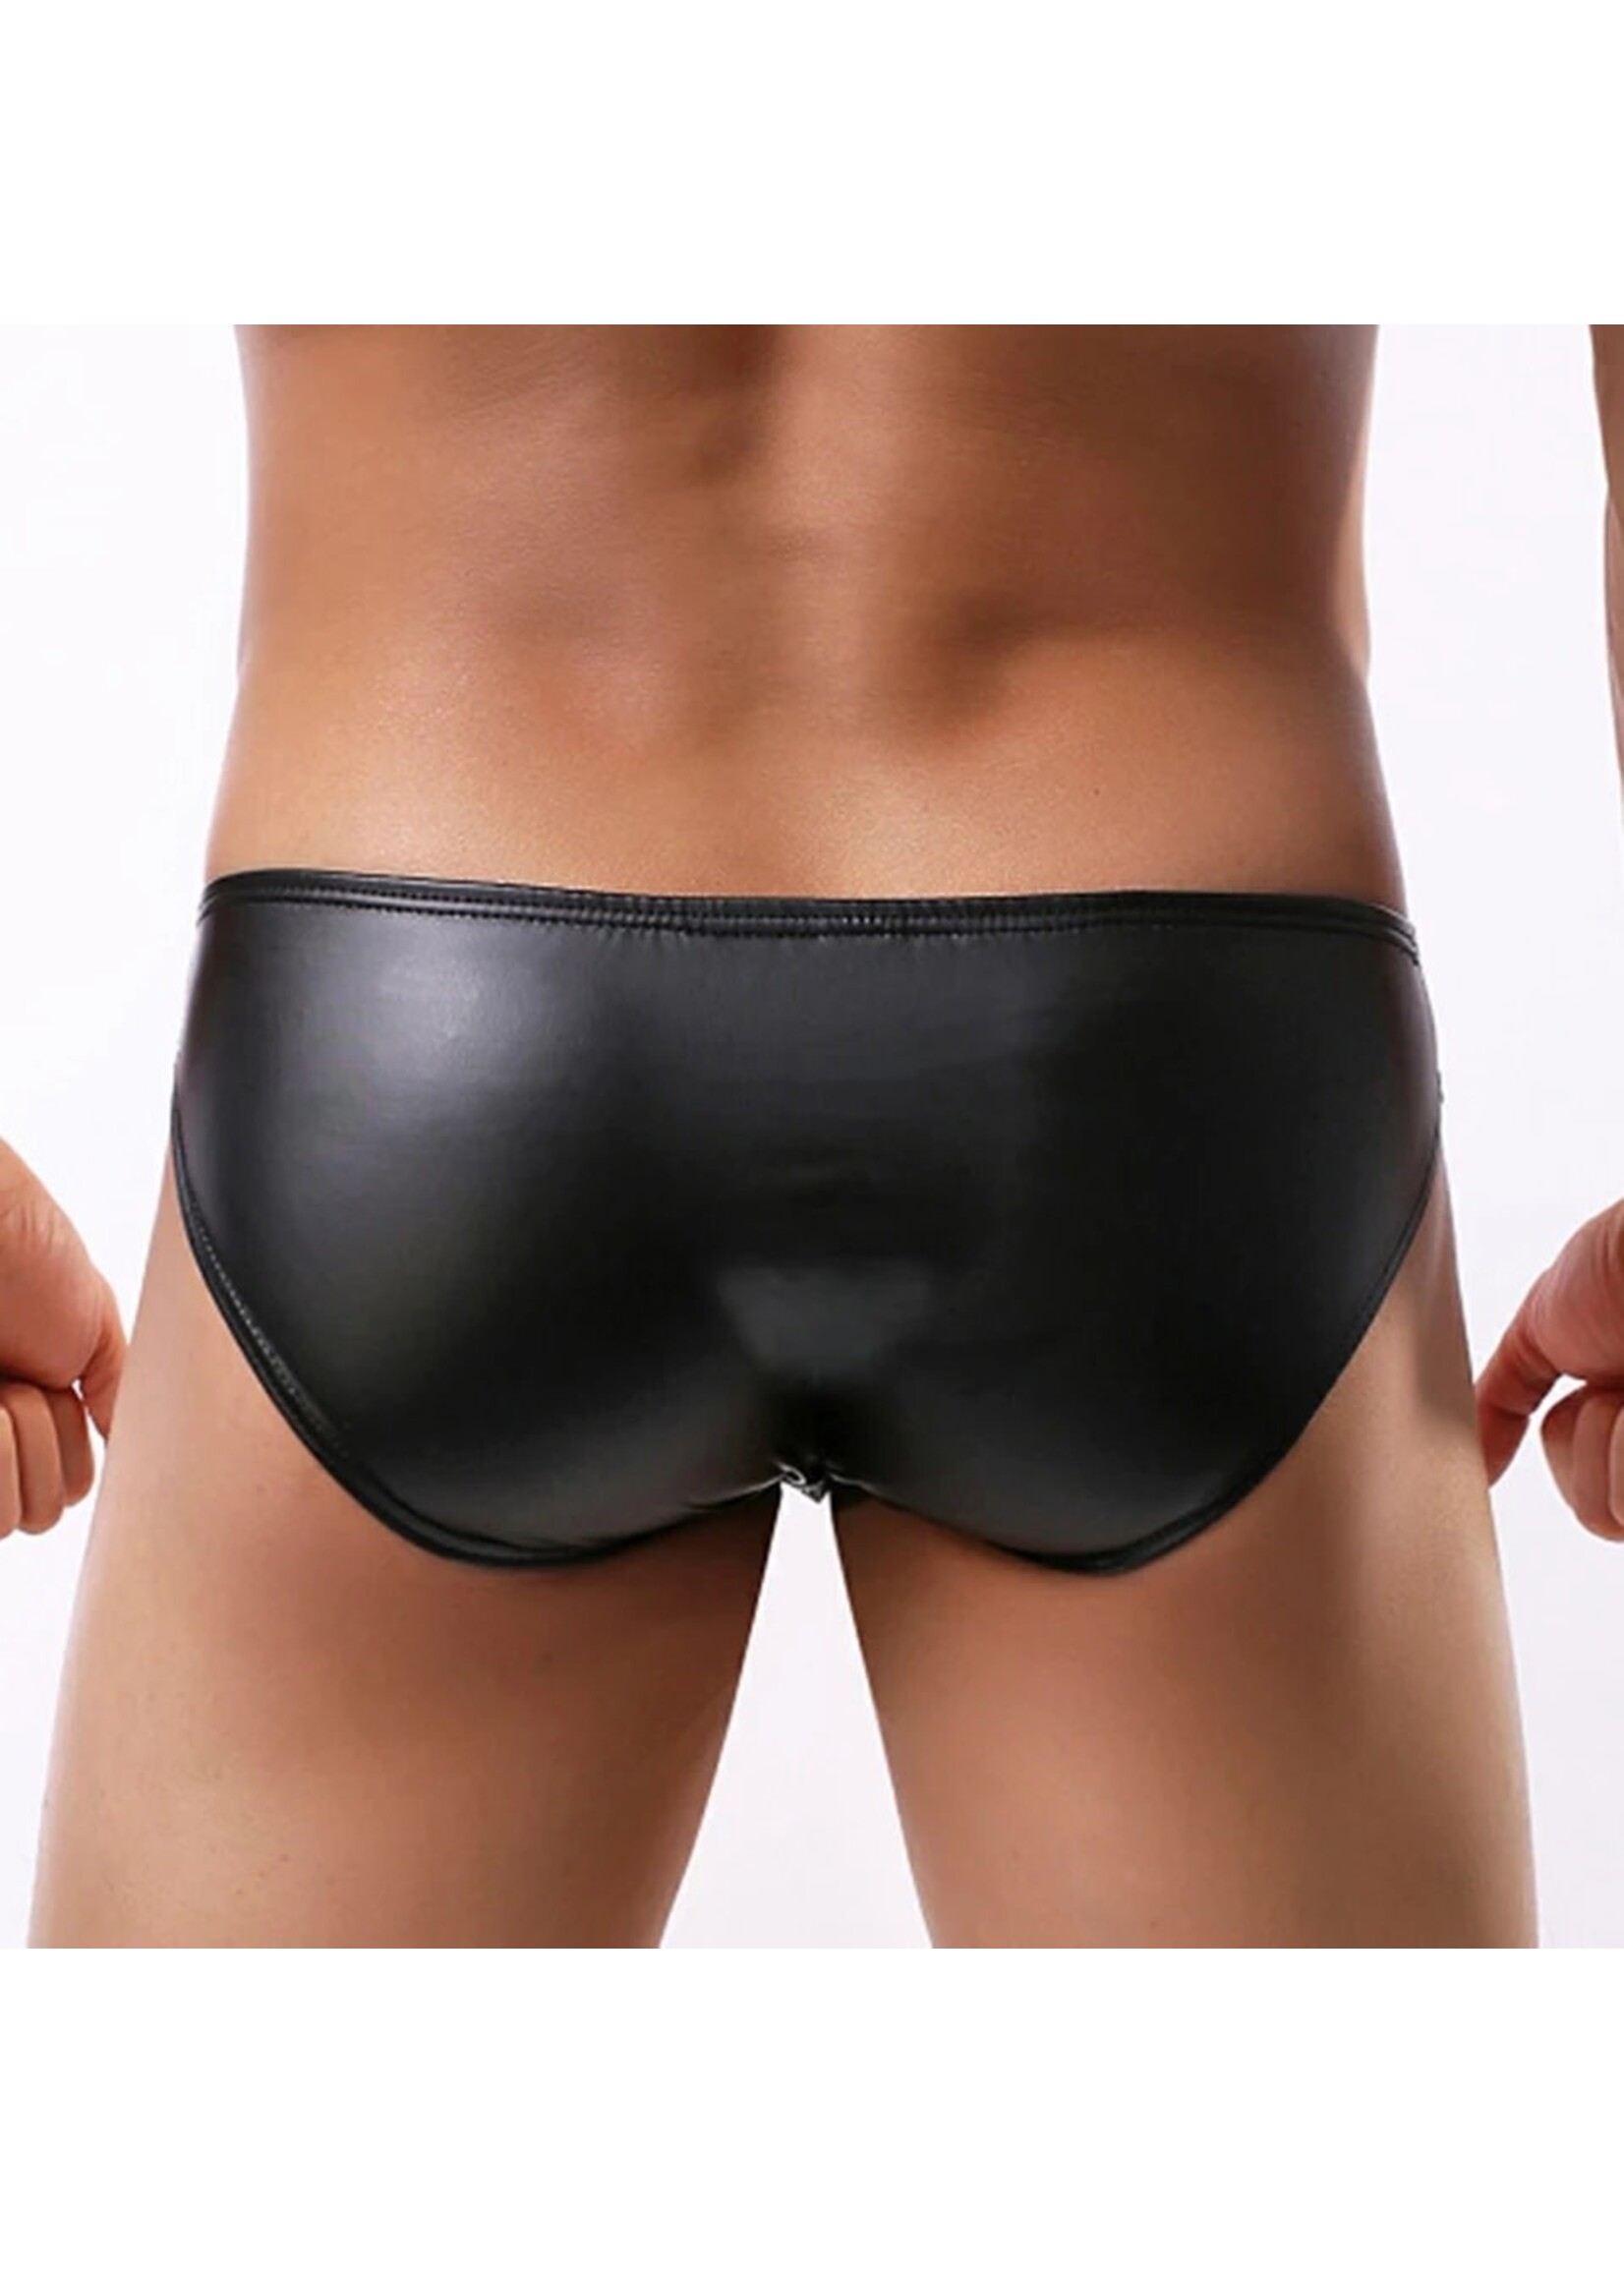 Men's PU Leather Underwear